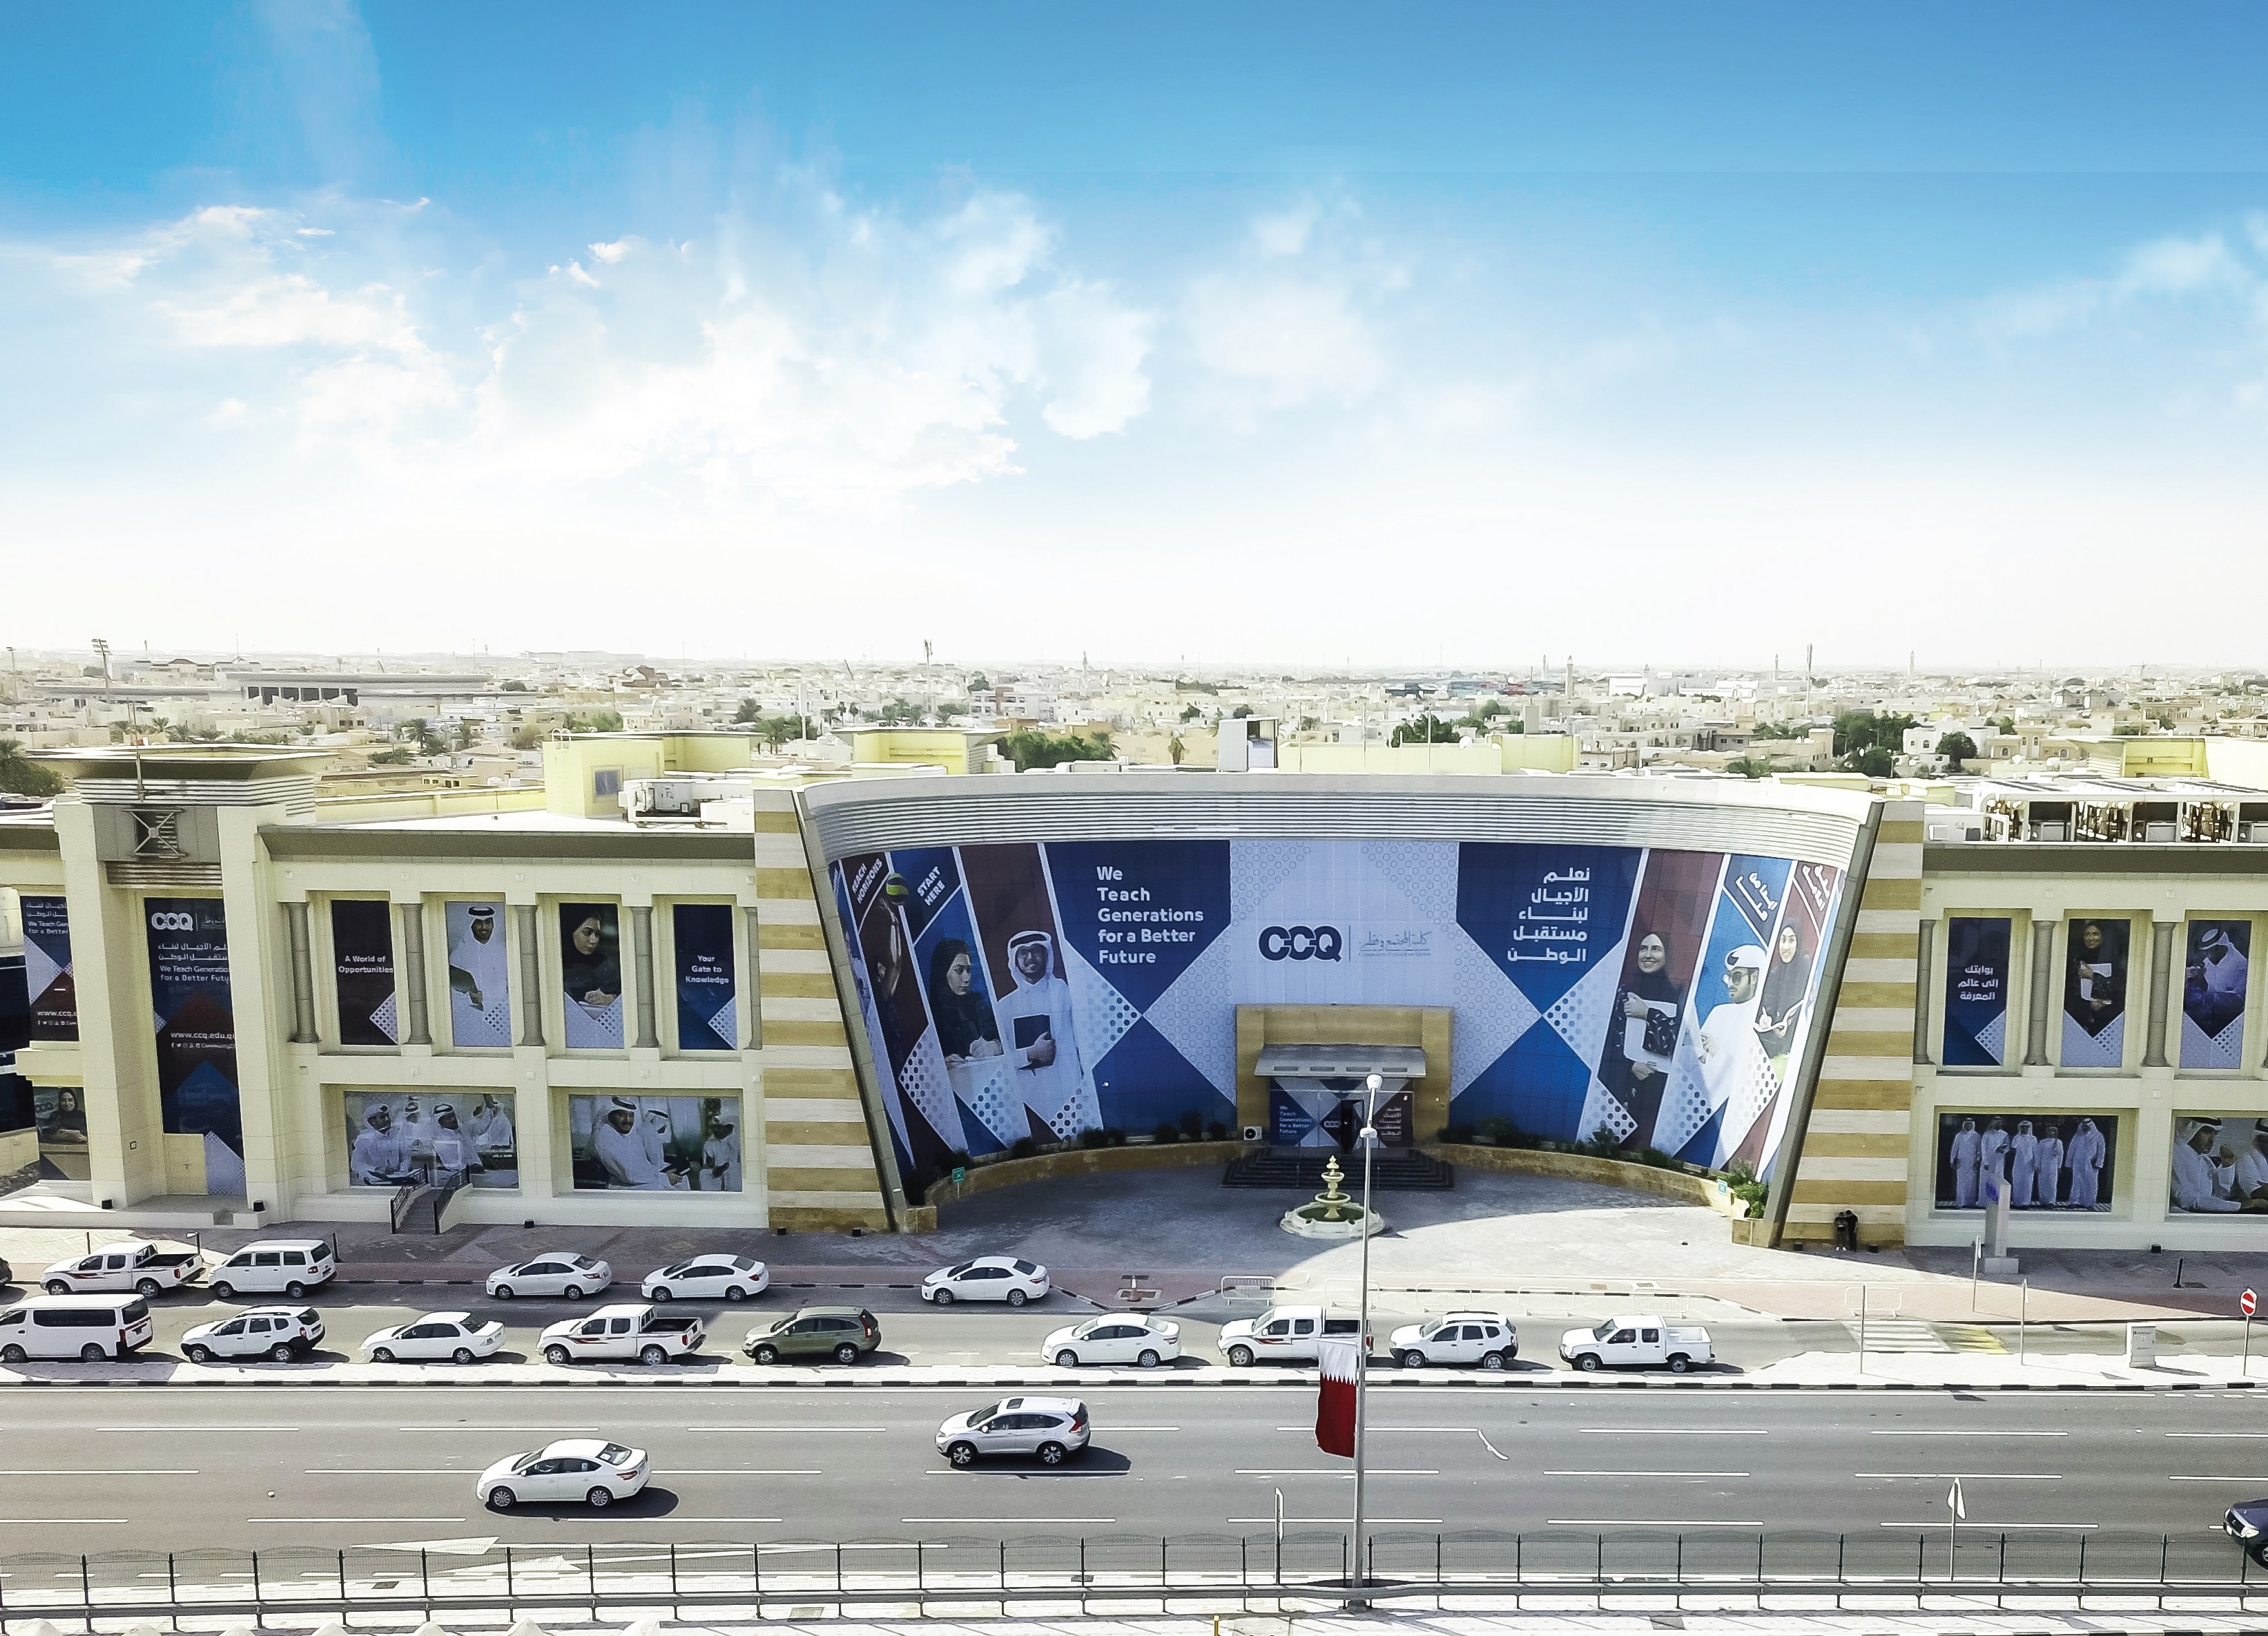 كلية المجتمع في قطر